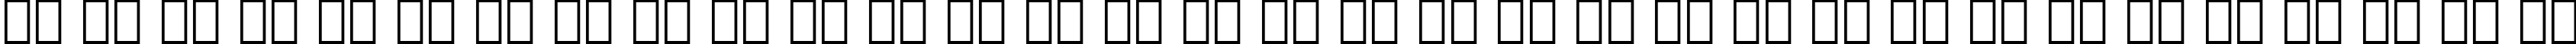 Пример написания русского алфавита шрифтом OCR-A BT